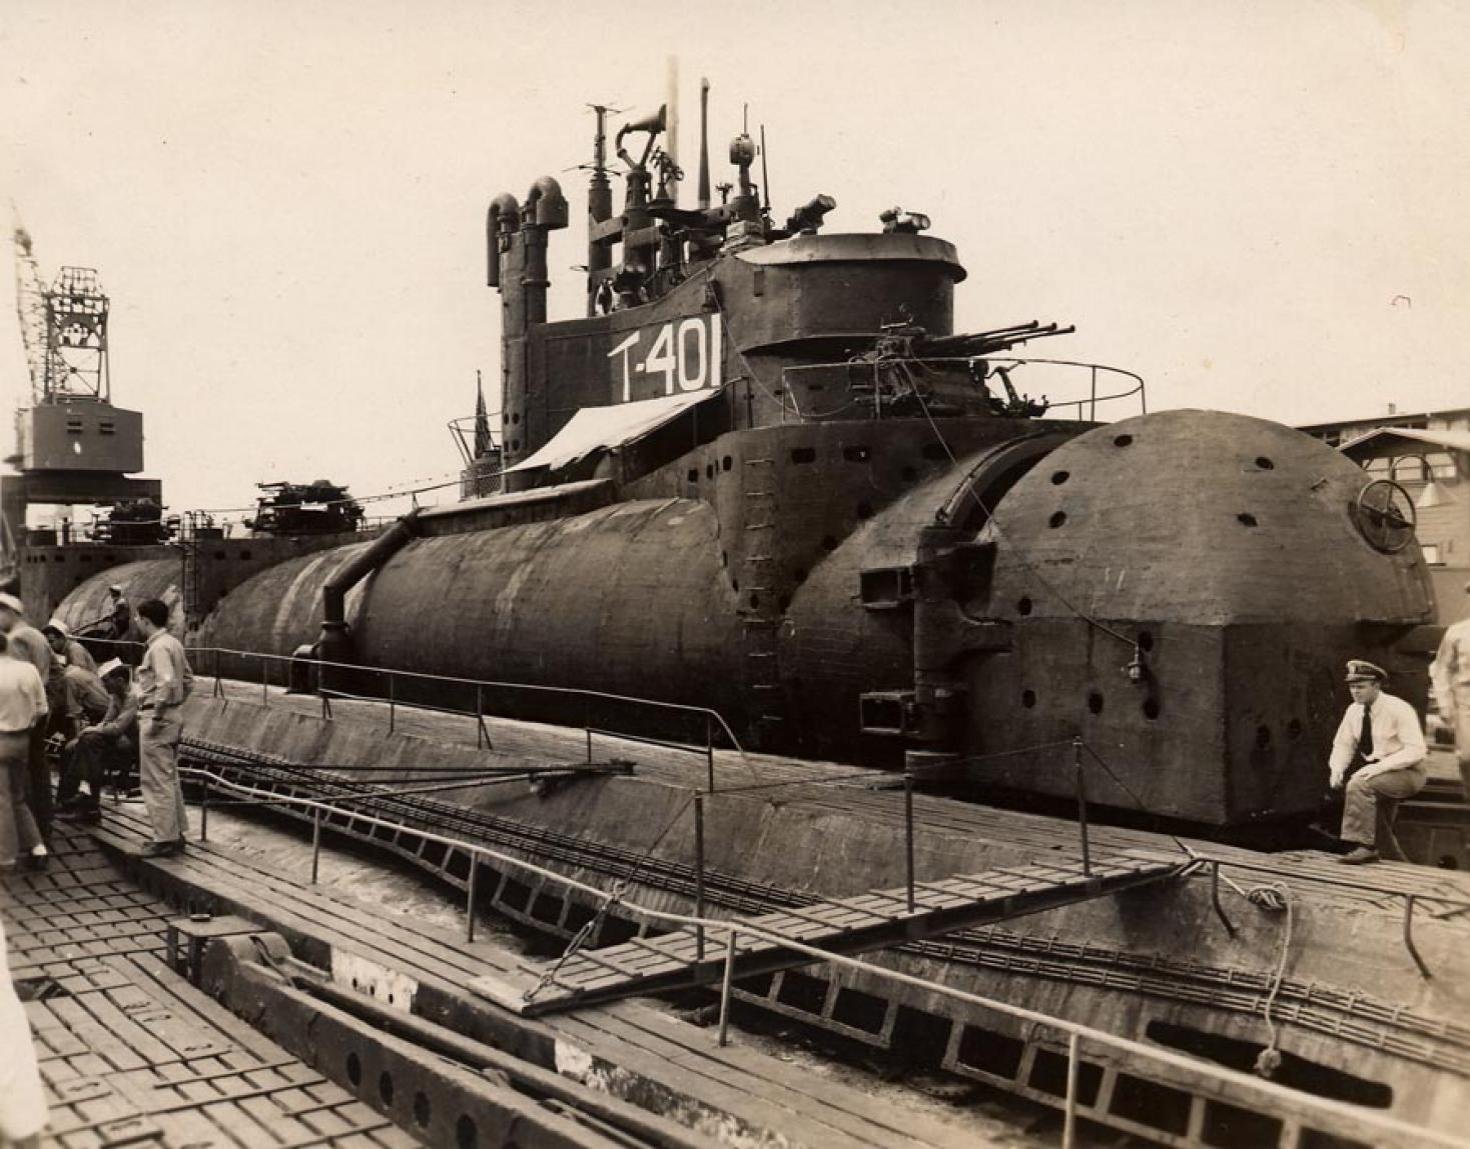 Мировой подводный флот. I-400 подводная лодка. Японская подлодка i-400. Подводная лодка авианосец i-400. Японский подводный авианосец i-400.